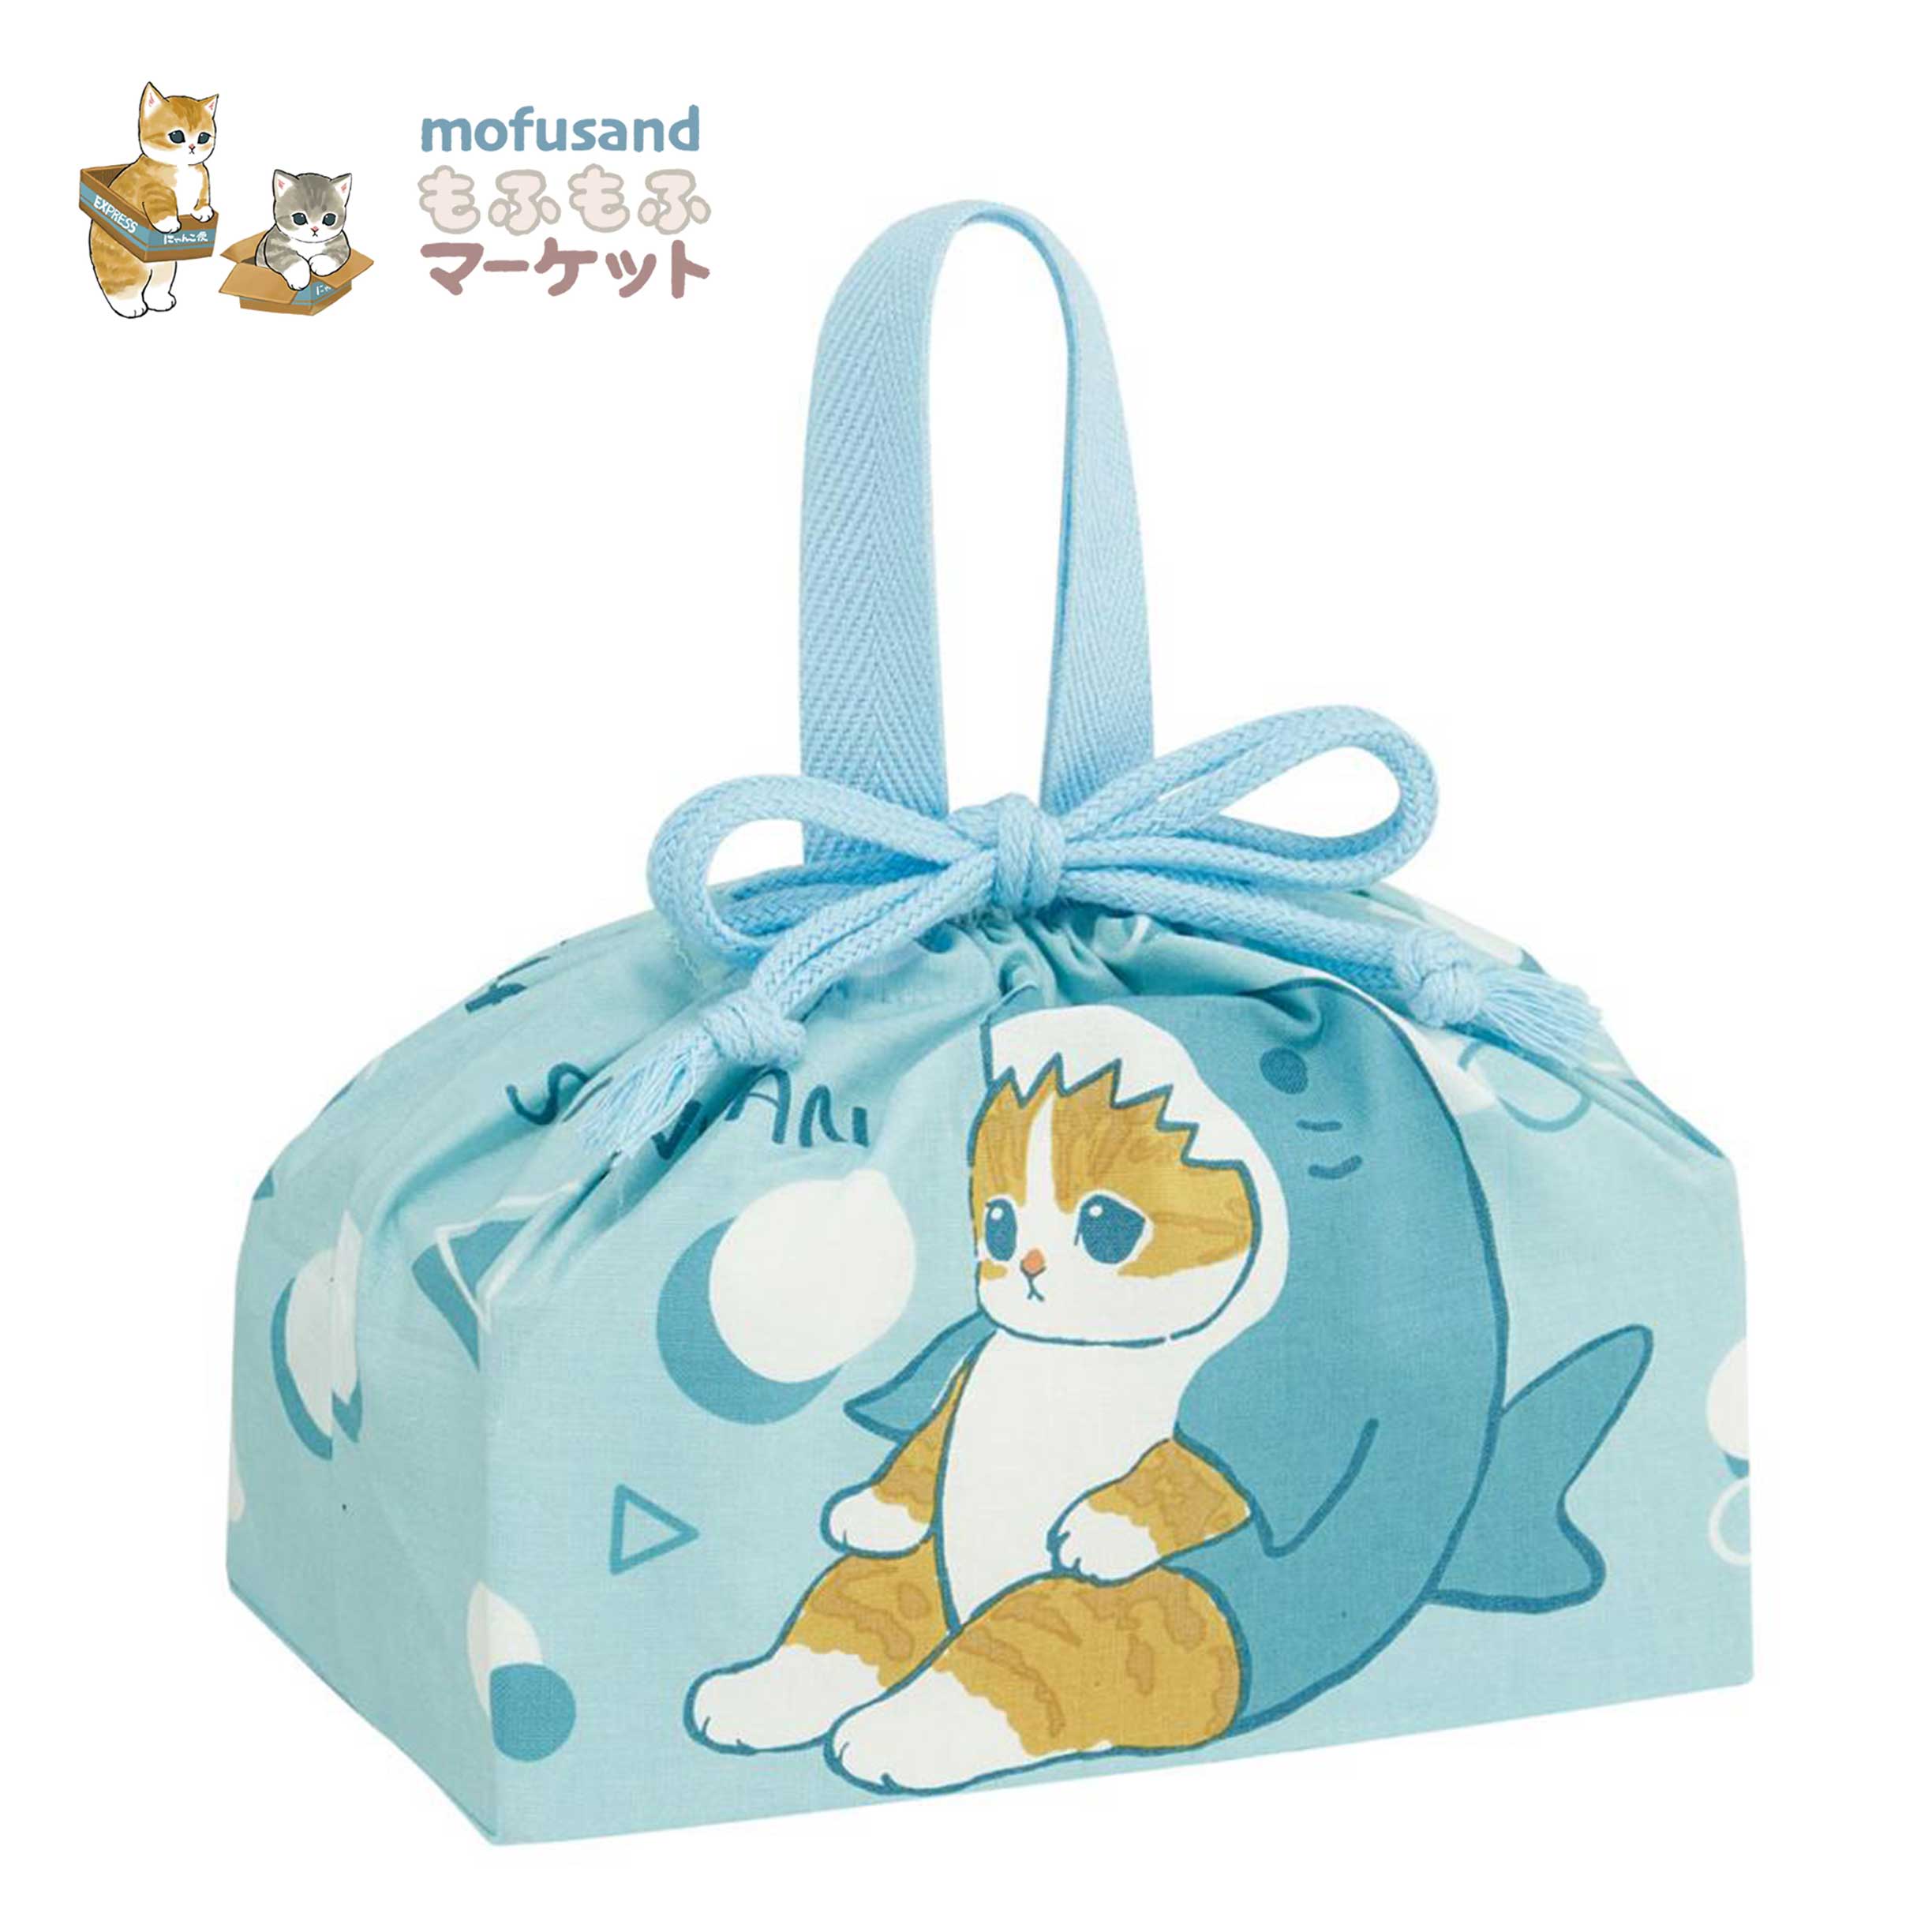 純棉午餐束口袋-貓福珊迪 mofusand 日本進口正版授權